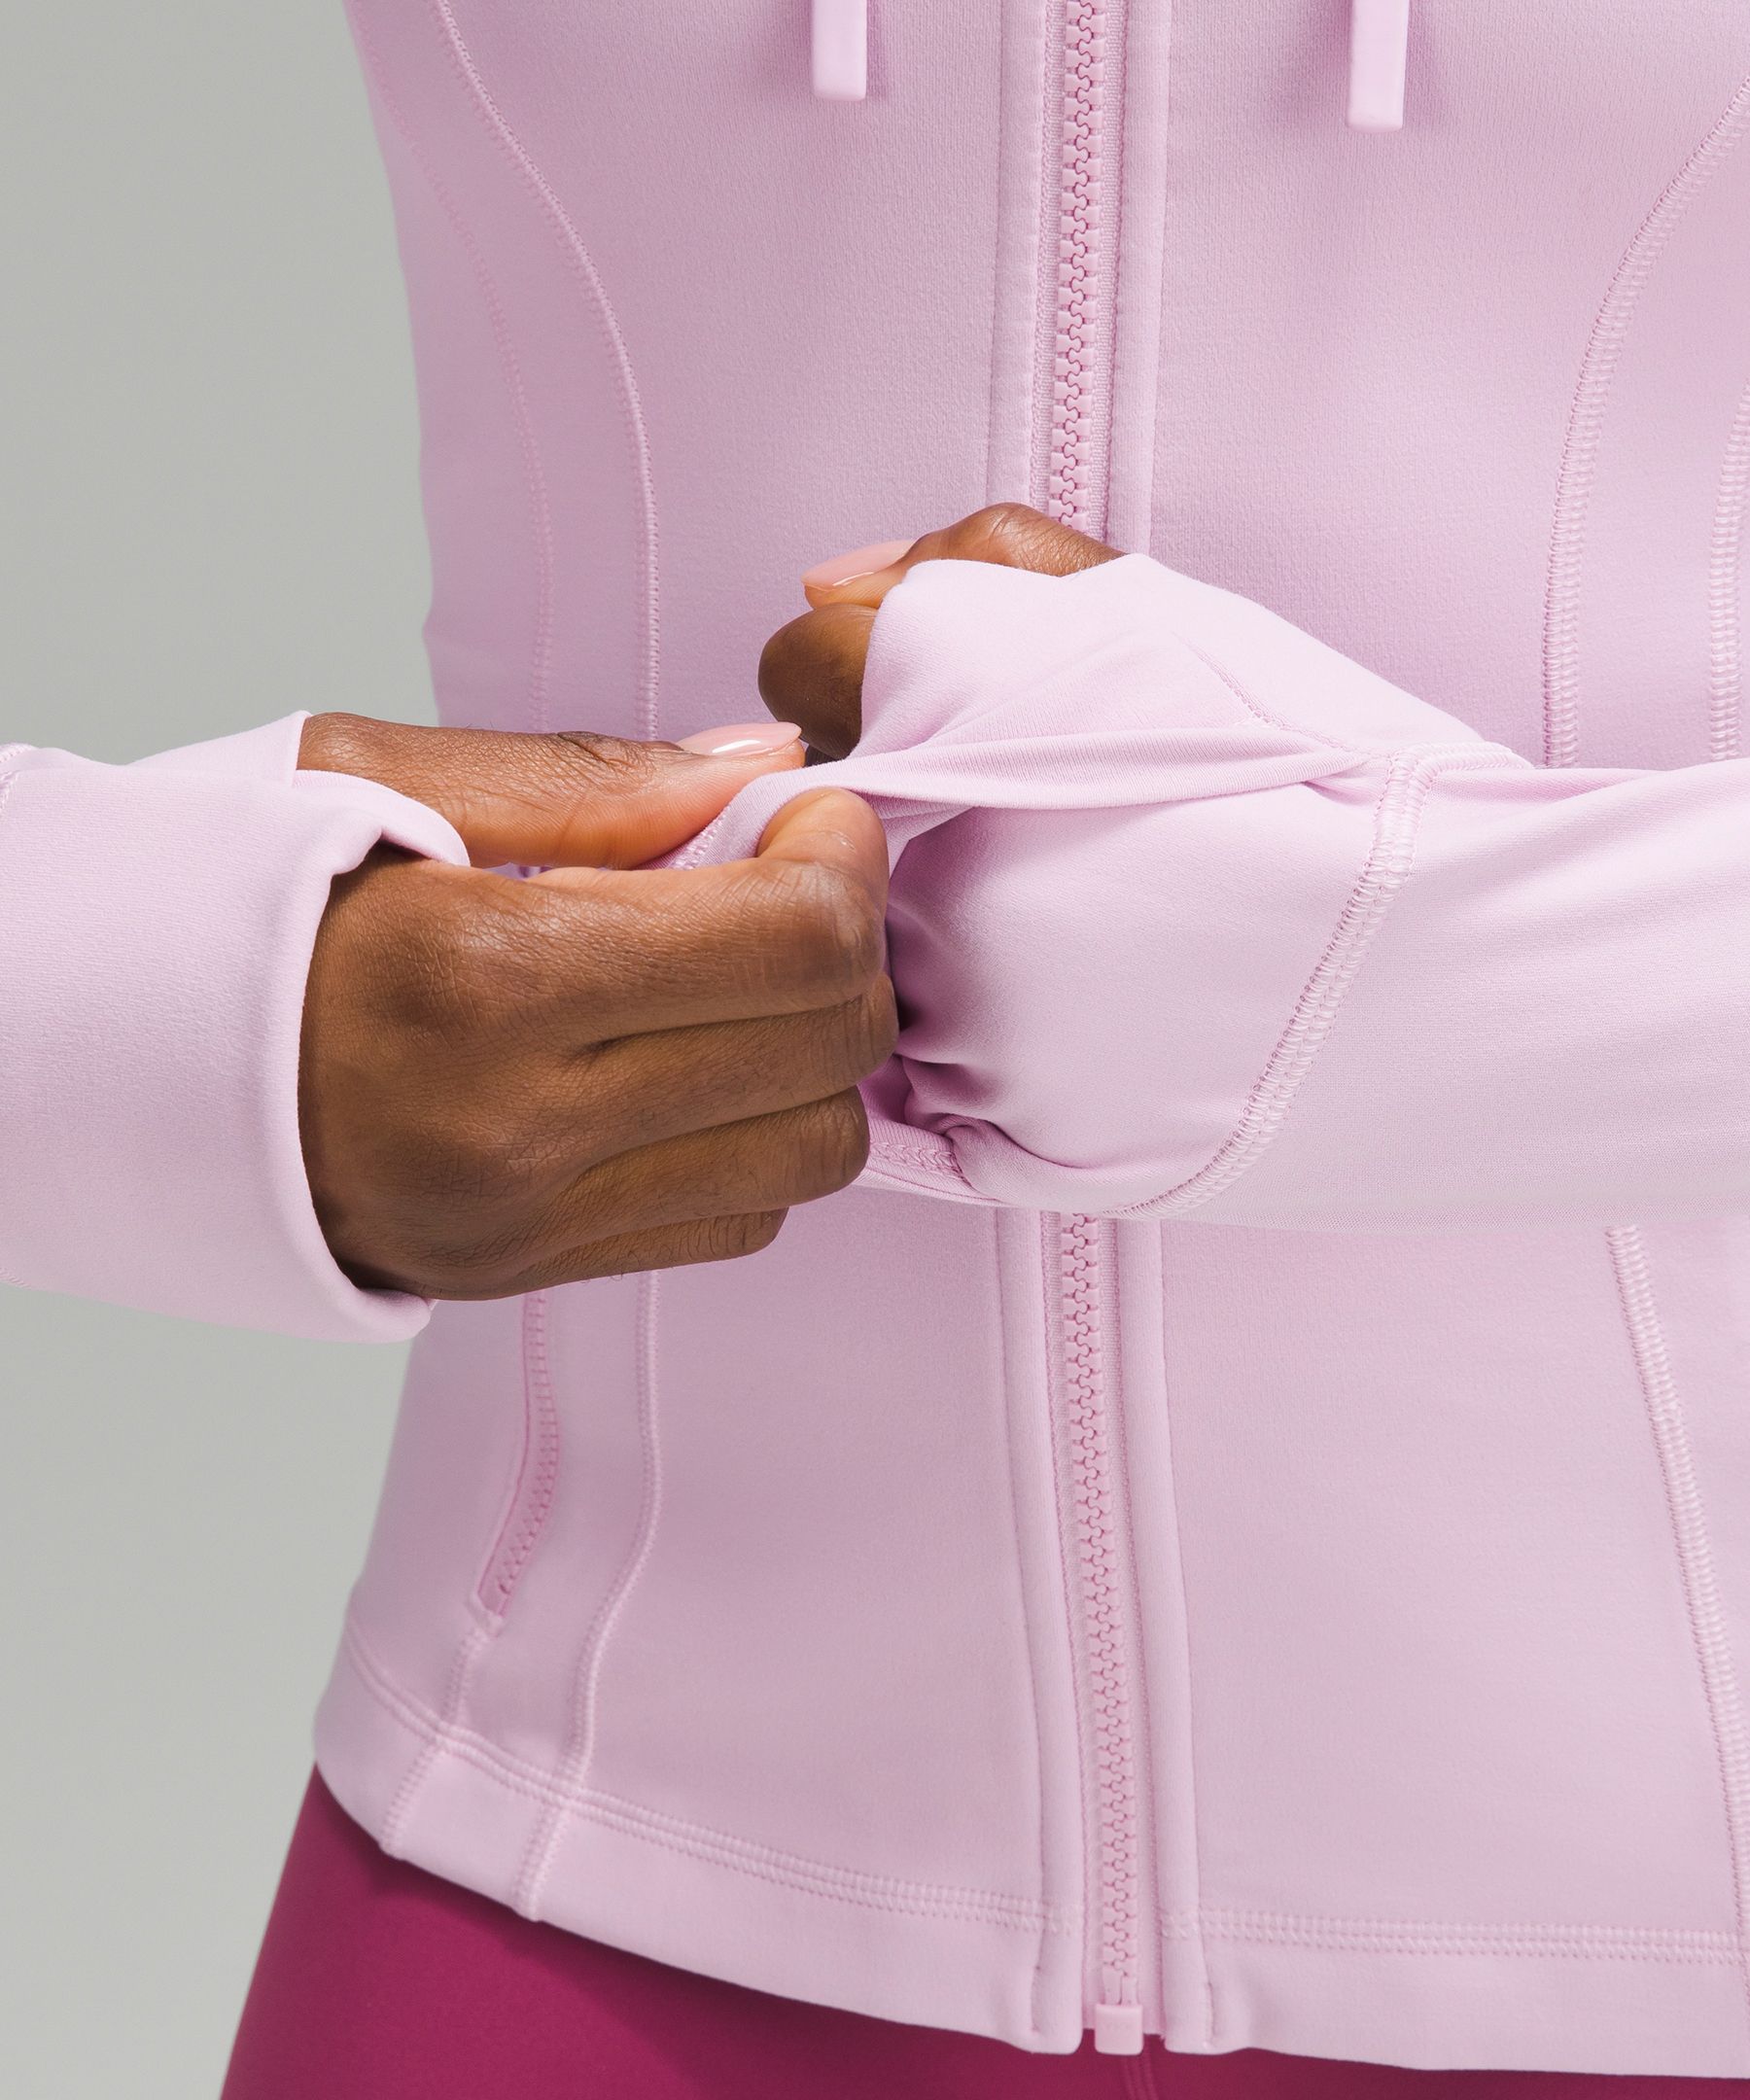 Lululemon Hooded Define Jacket Nulu Pink Size 8 - $53 (58% Off